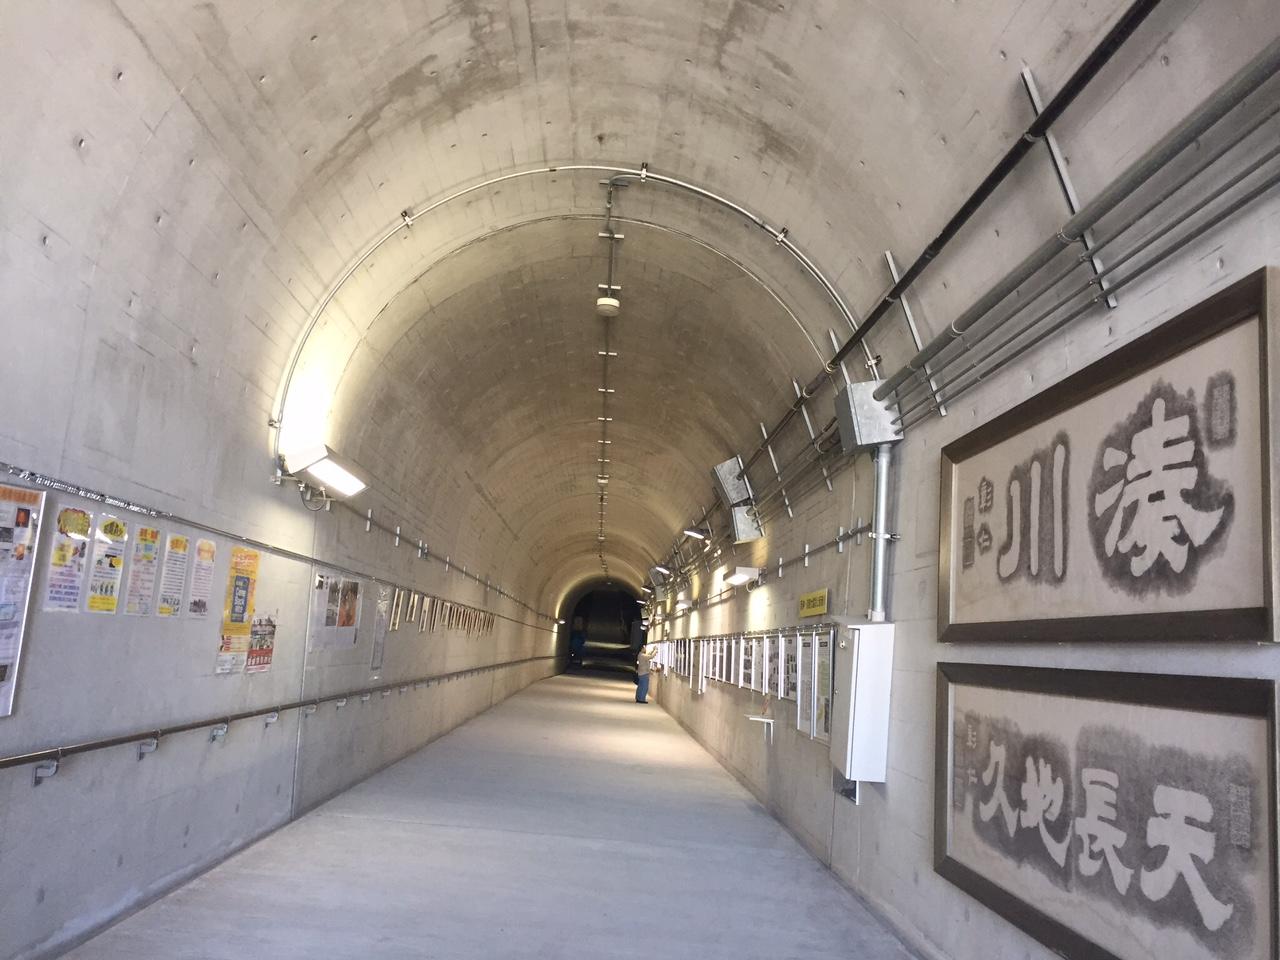 隧道 湊川 湊川隧道公式WEBサイト 悠久の時を経て、現代に残る神戸の近代化産業遺産